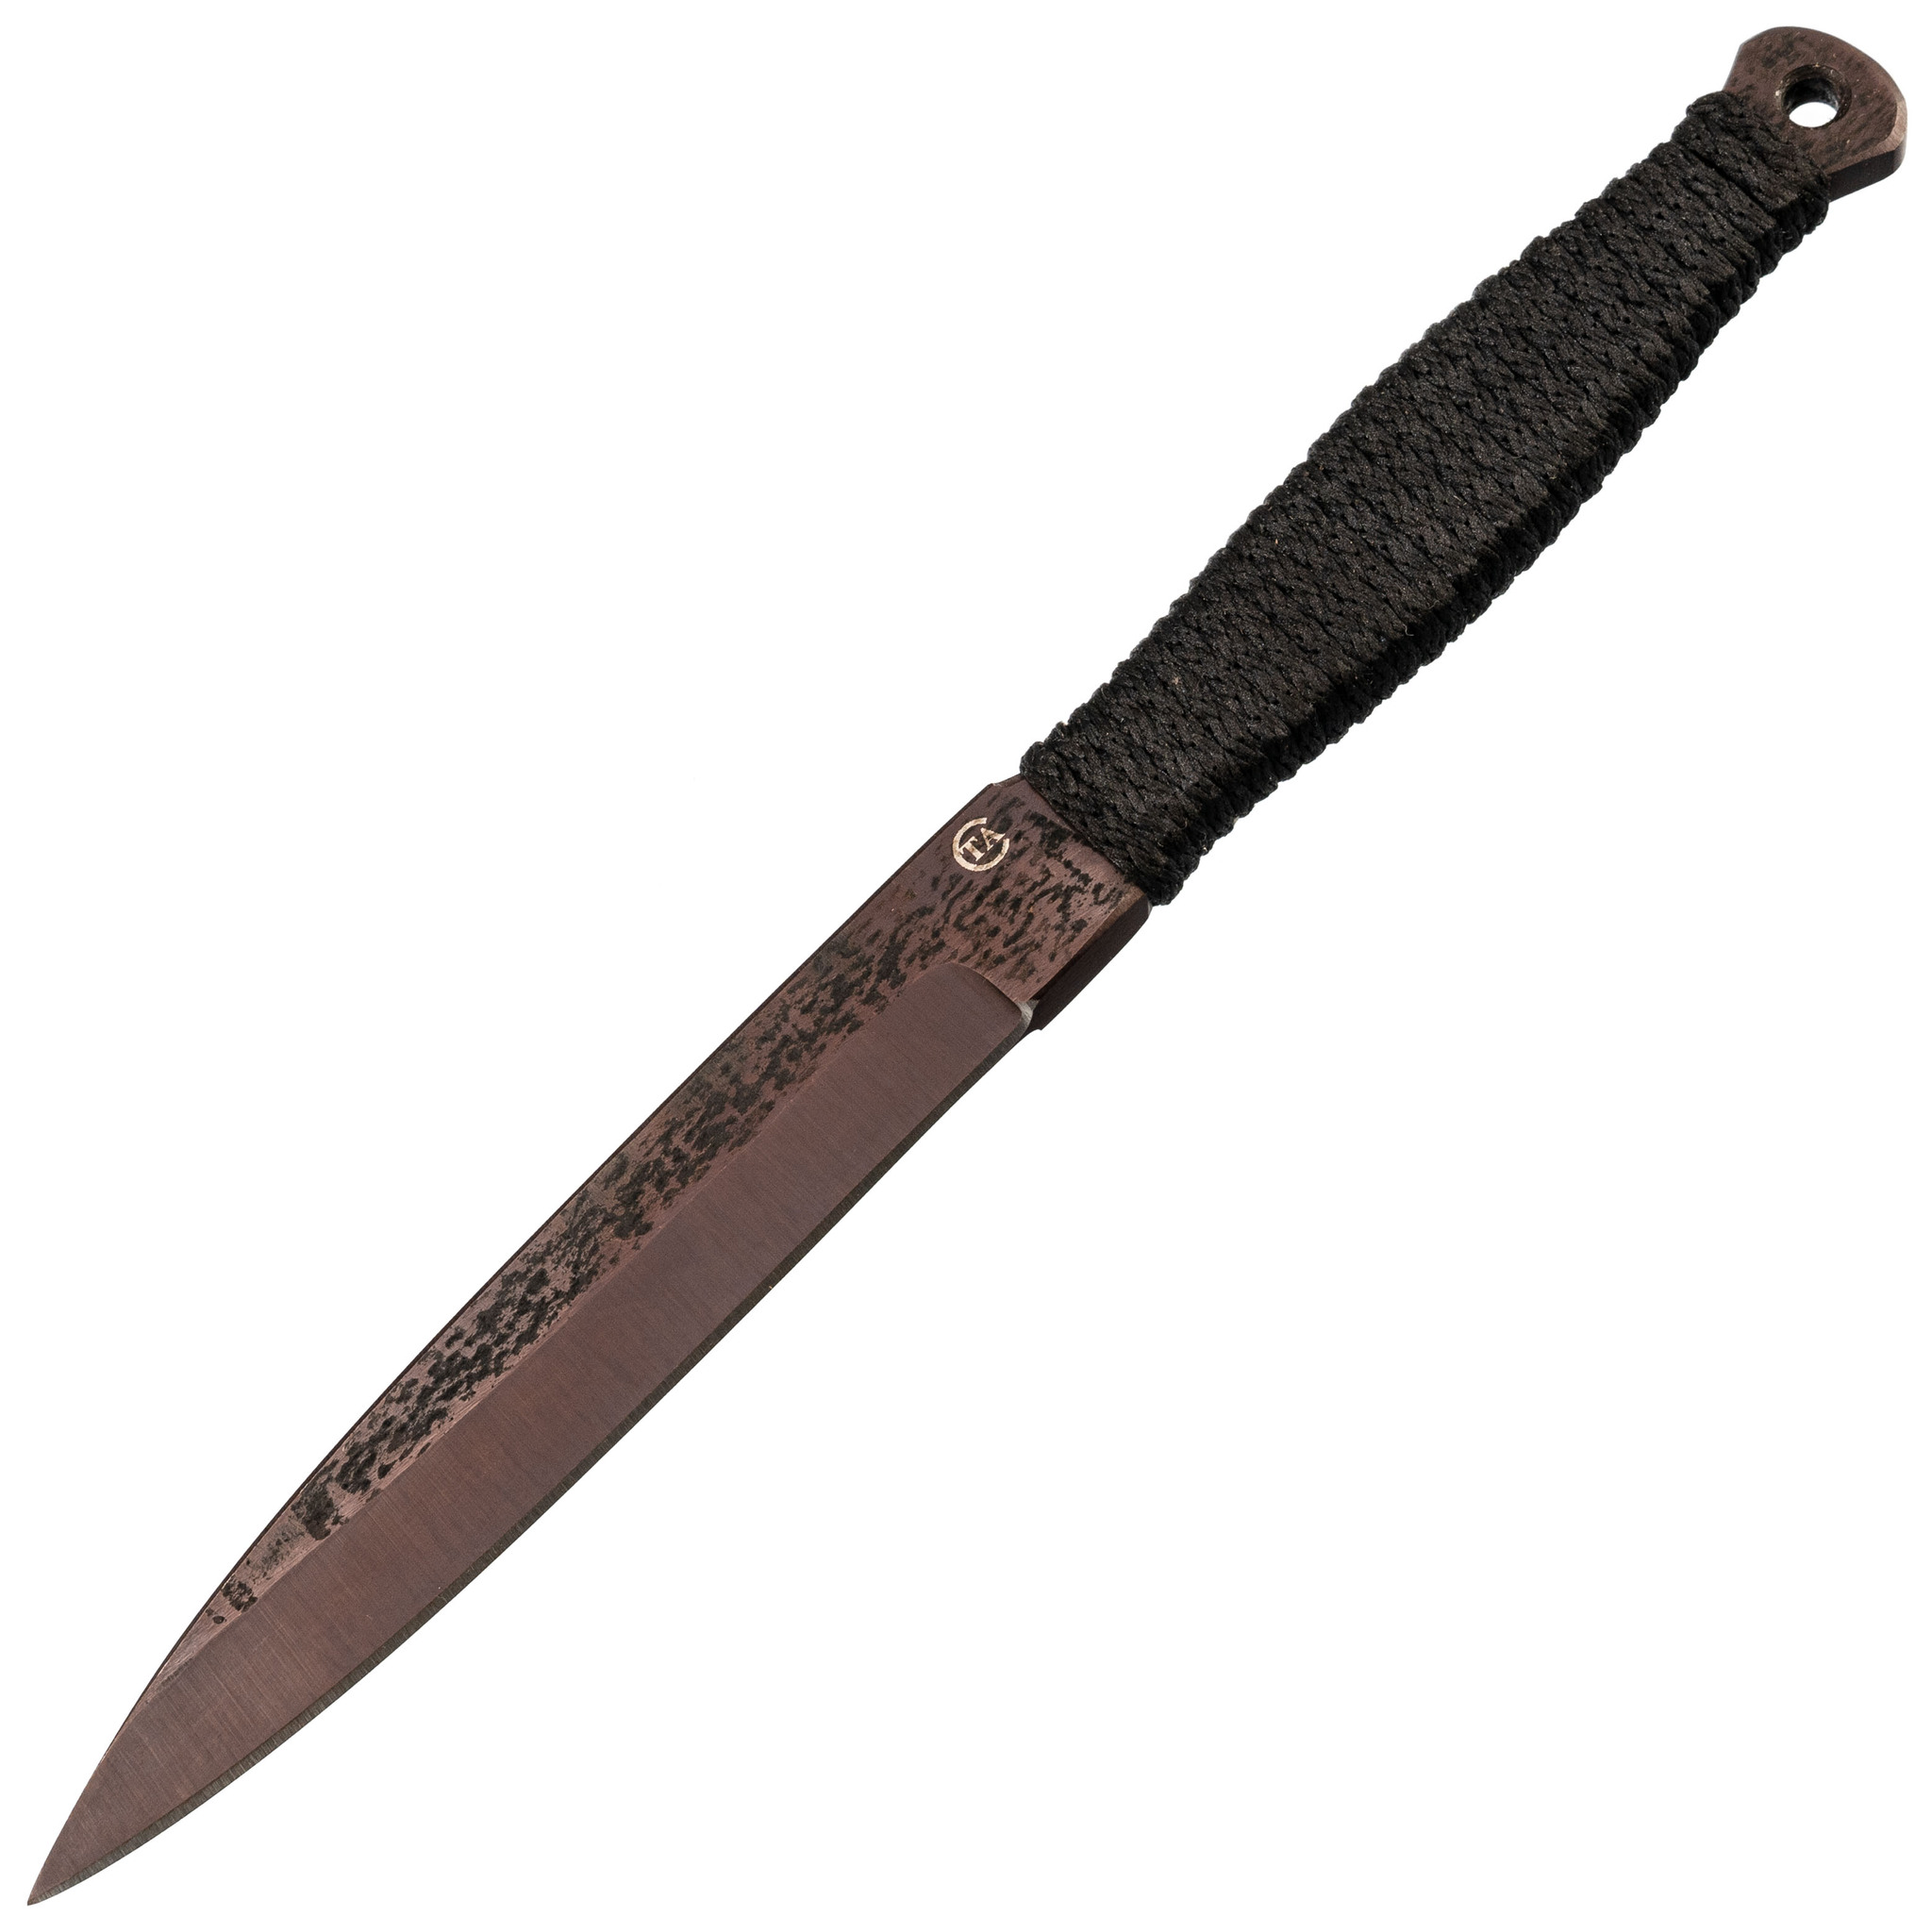 Спортивный нож «Горец-3М», сталь 65Г набор спортивных ножей тайга комплект 3 шт сталь 65х13 с веревочной намоткой